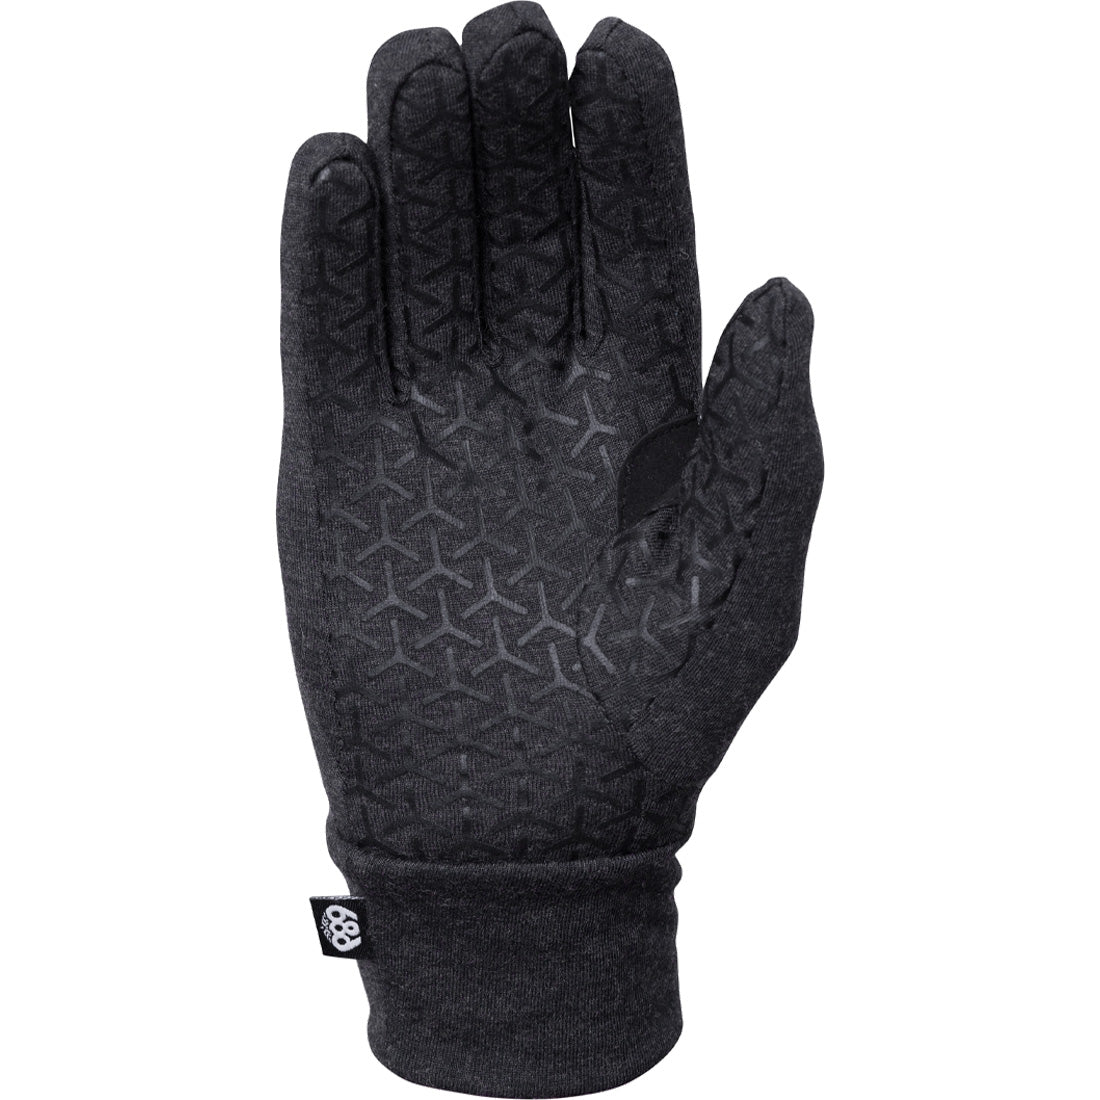 686 Merino Glove Liner - Men's